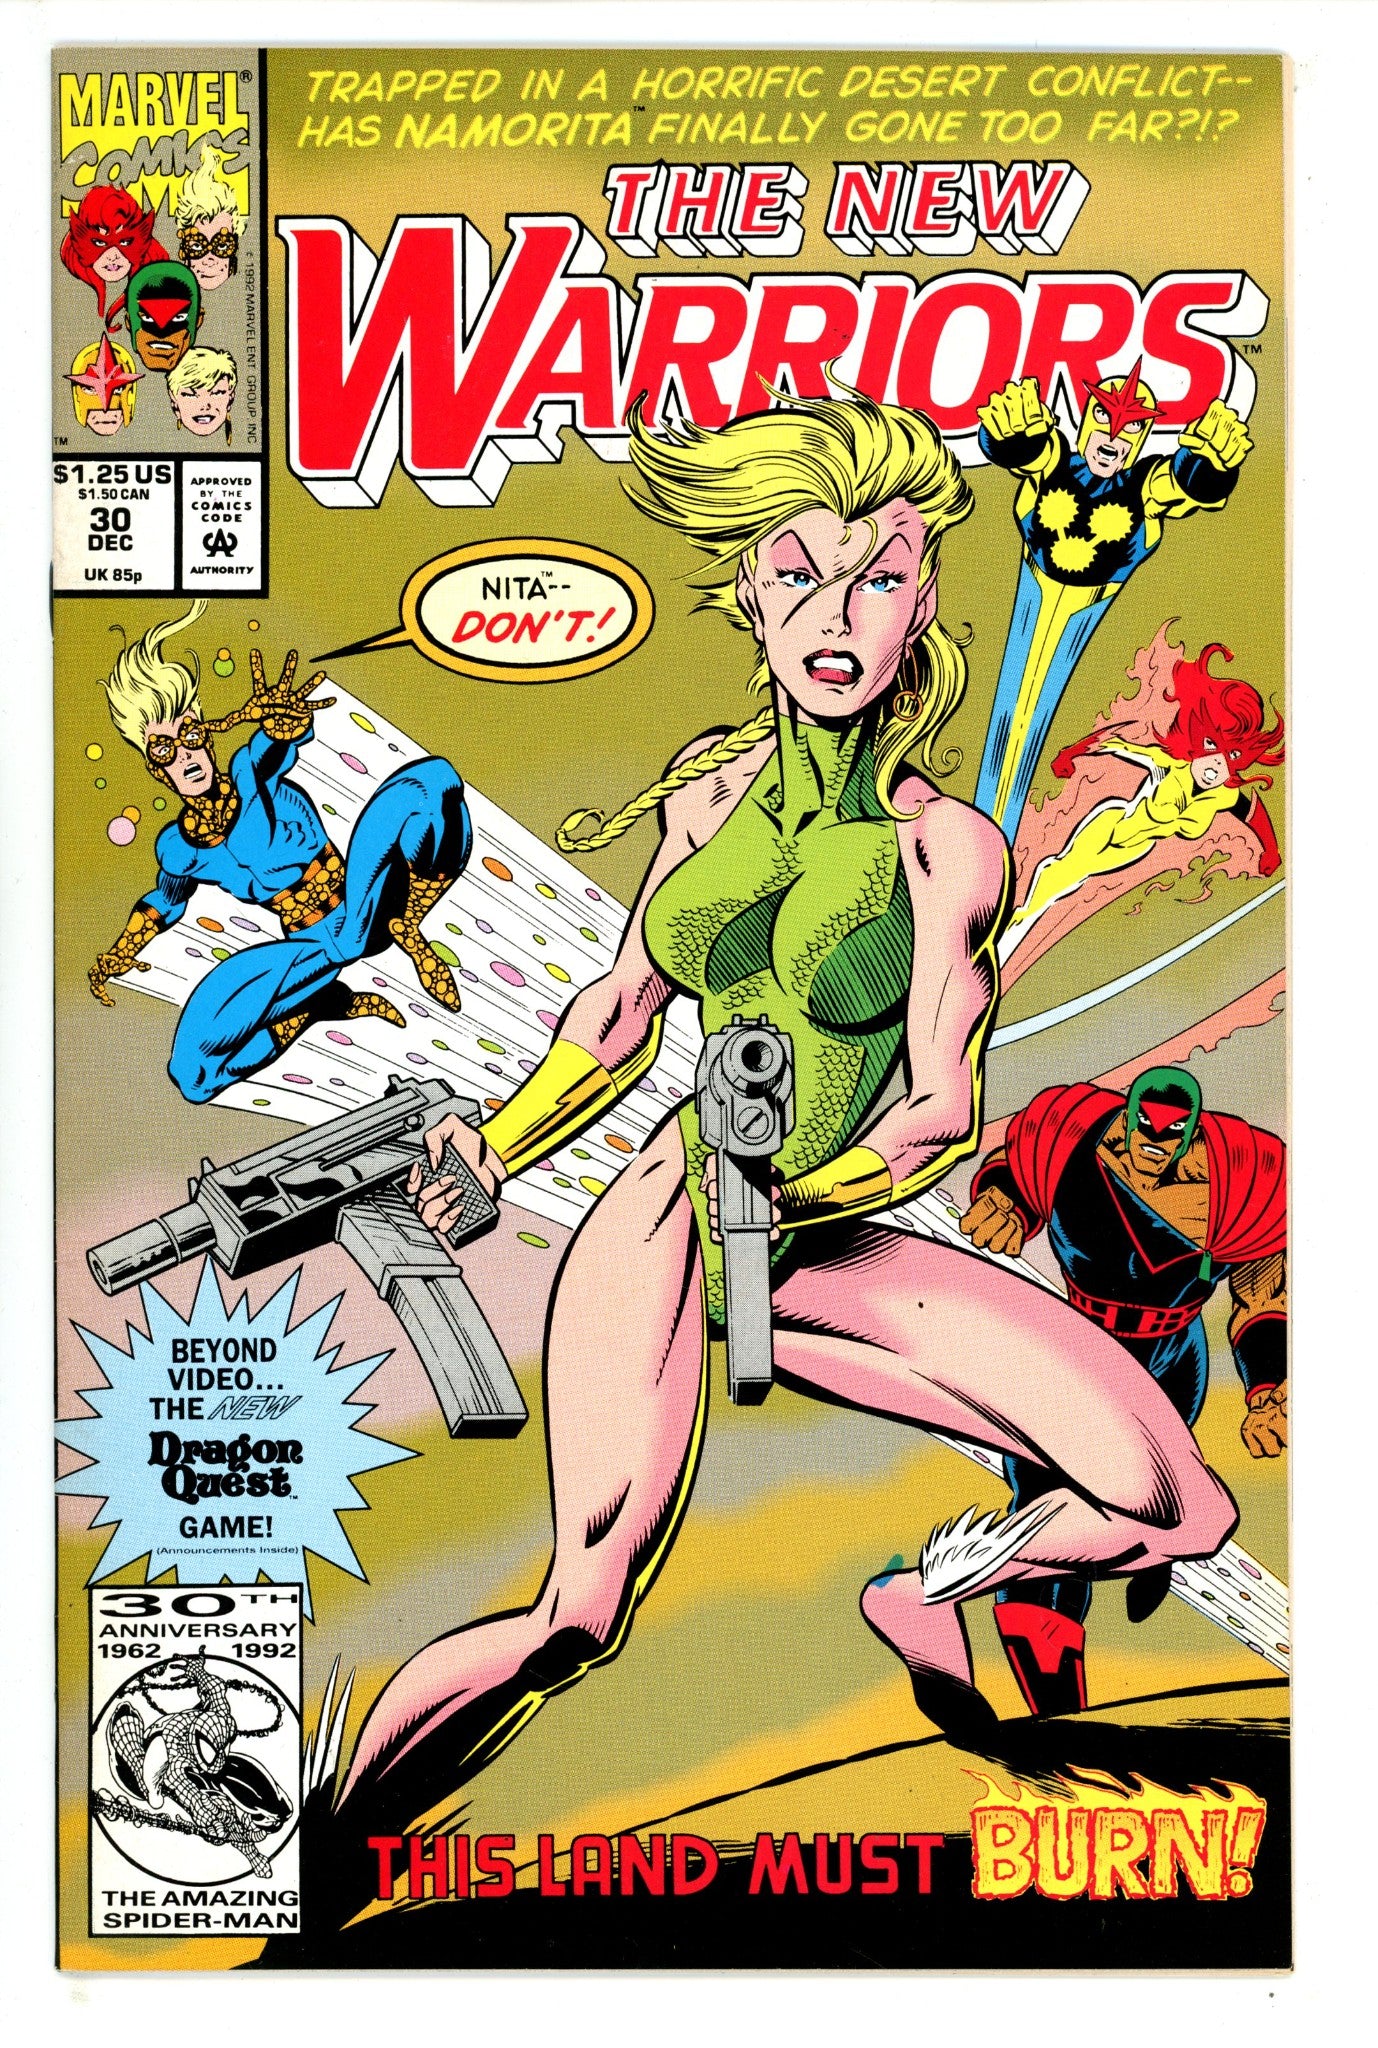 The New Warriors Vol 1 30 (1992)